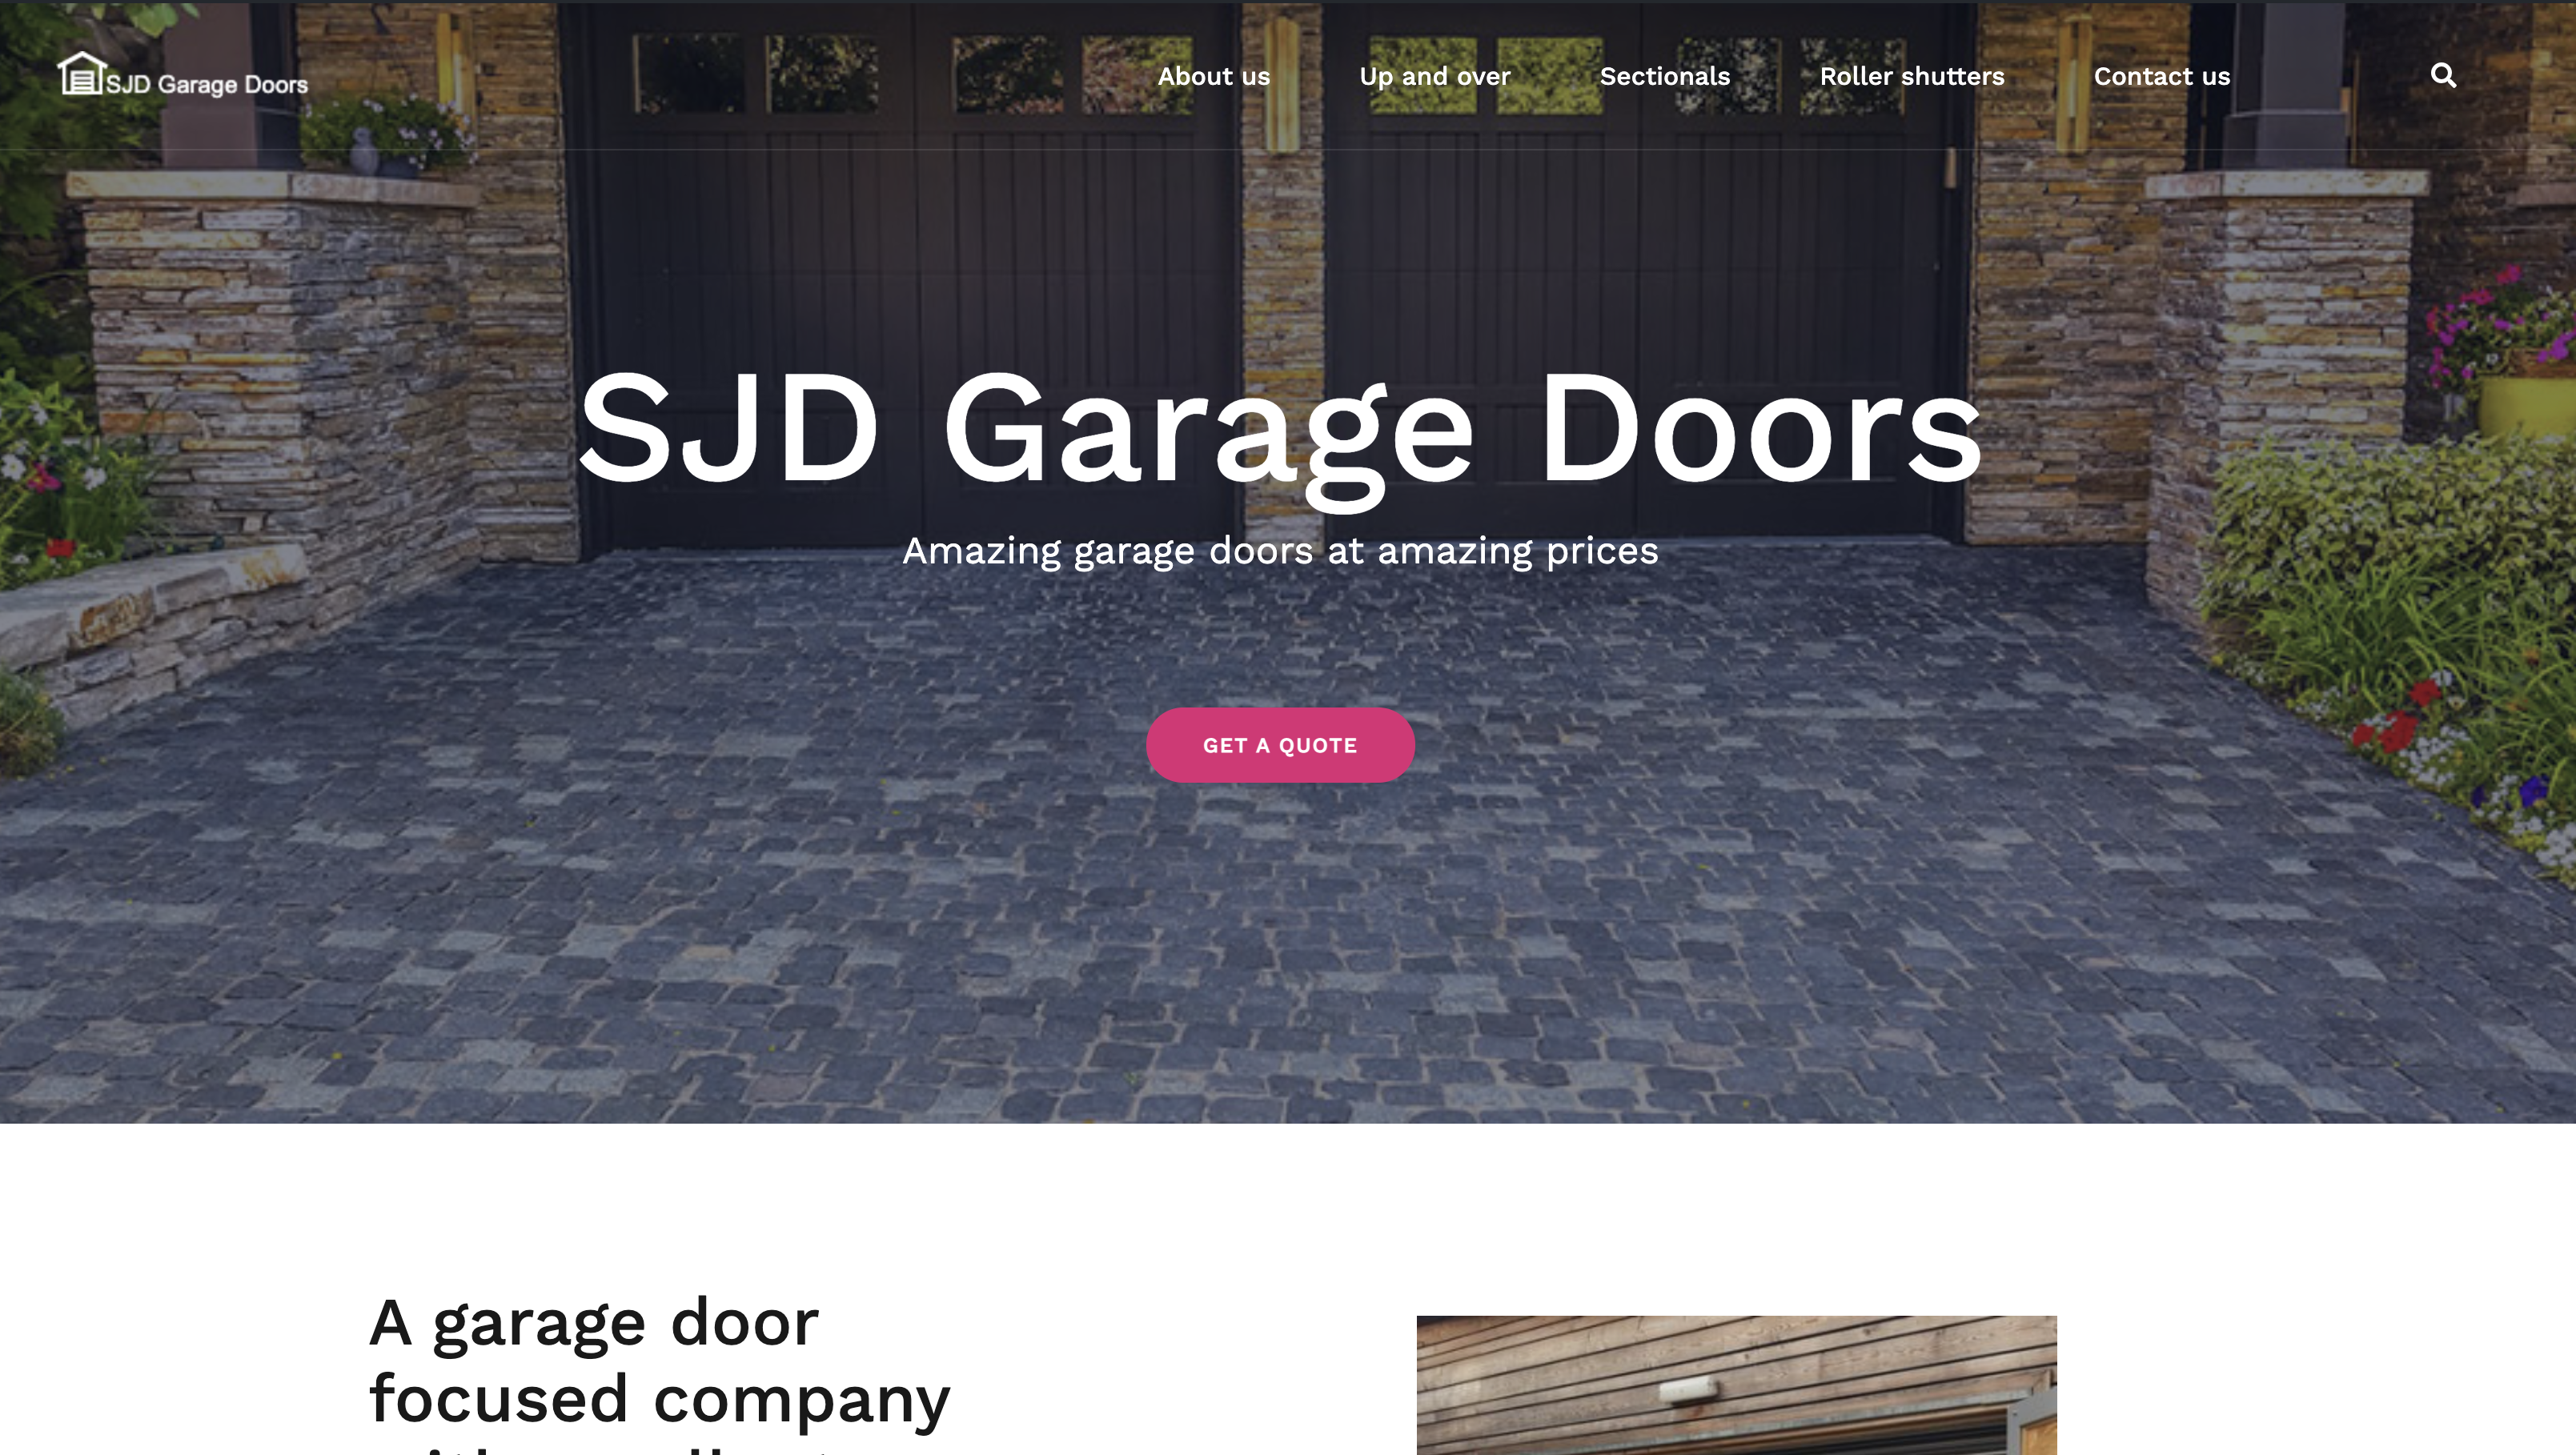 SJD garage doors